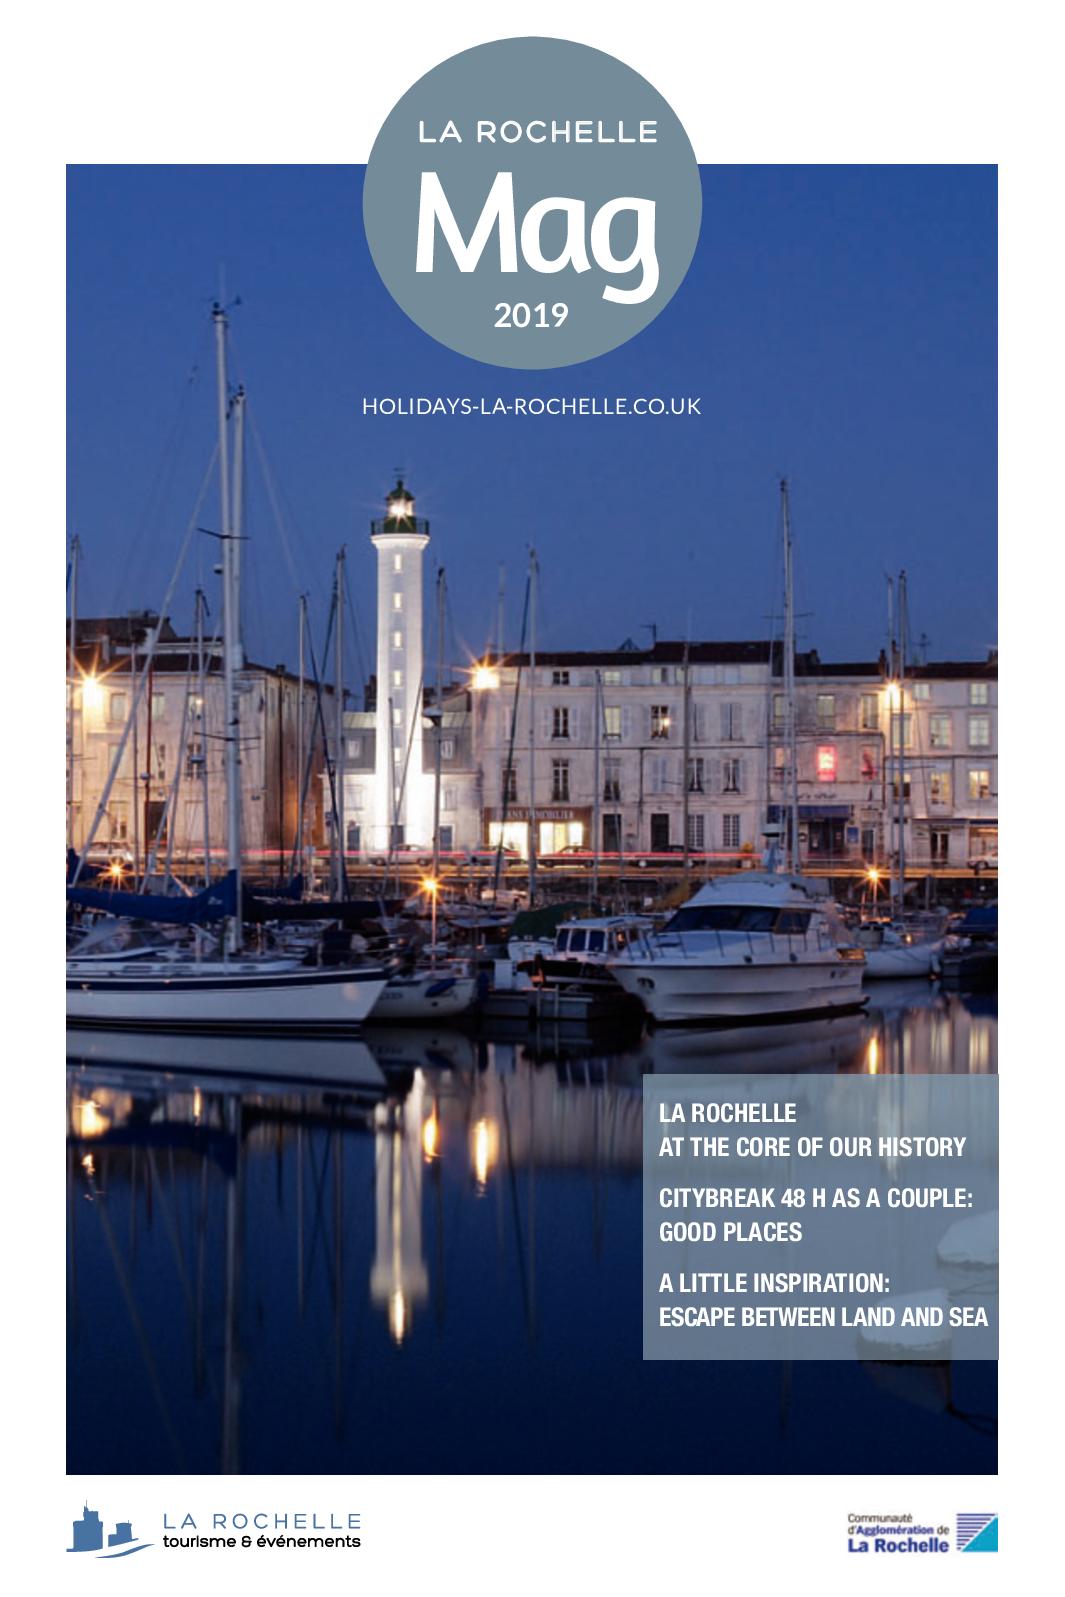 Salon De Jardin 4 Places Inspirant Calaméo La Rochelle City Guide 2019